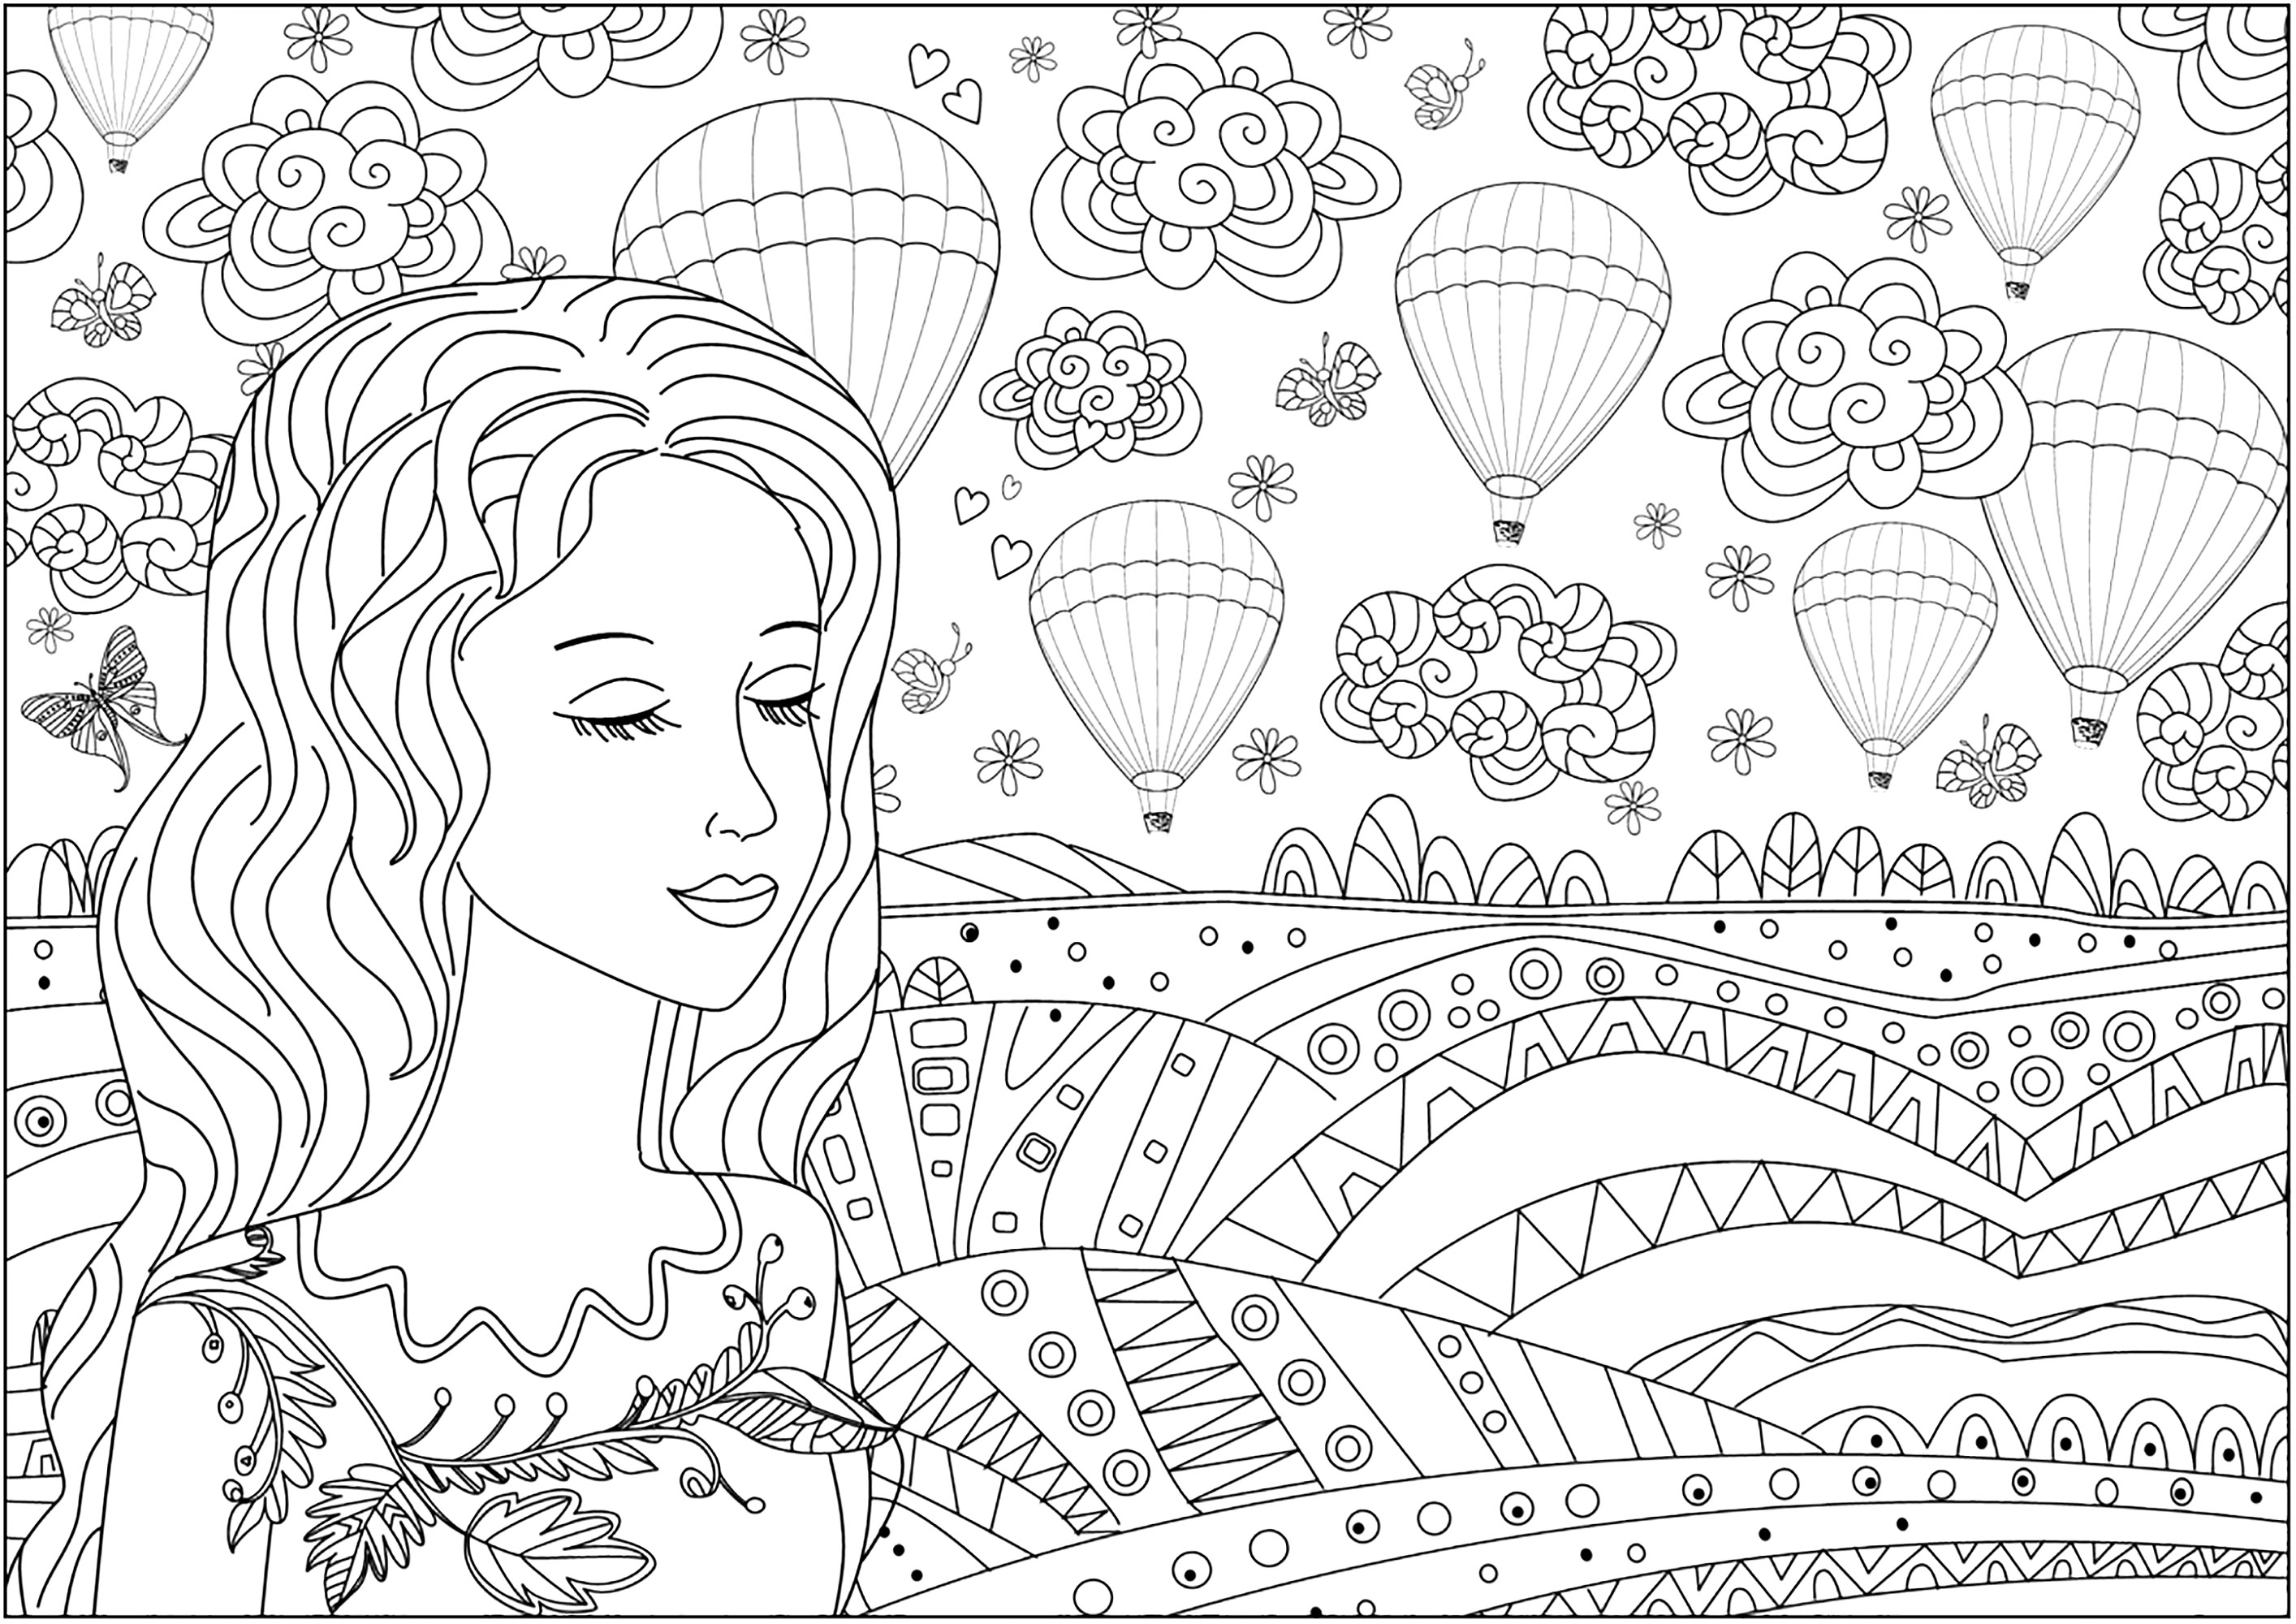 Nachdenkliche Frau vor einer Ebene und Heißluftballons am Himmel. Viele Details zum Ausmalen in dieser hübschen und originellen Malvorlage.